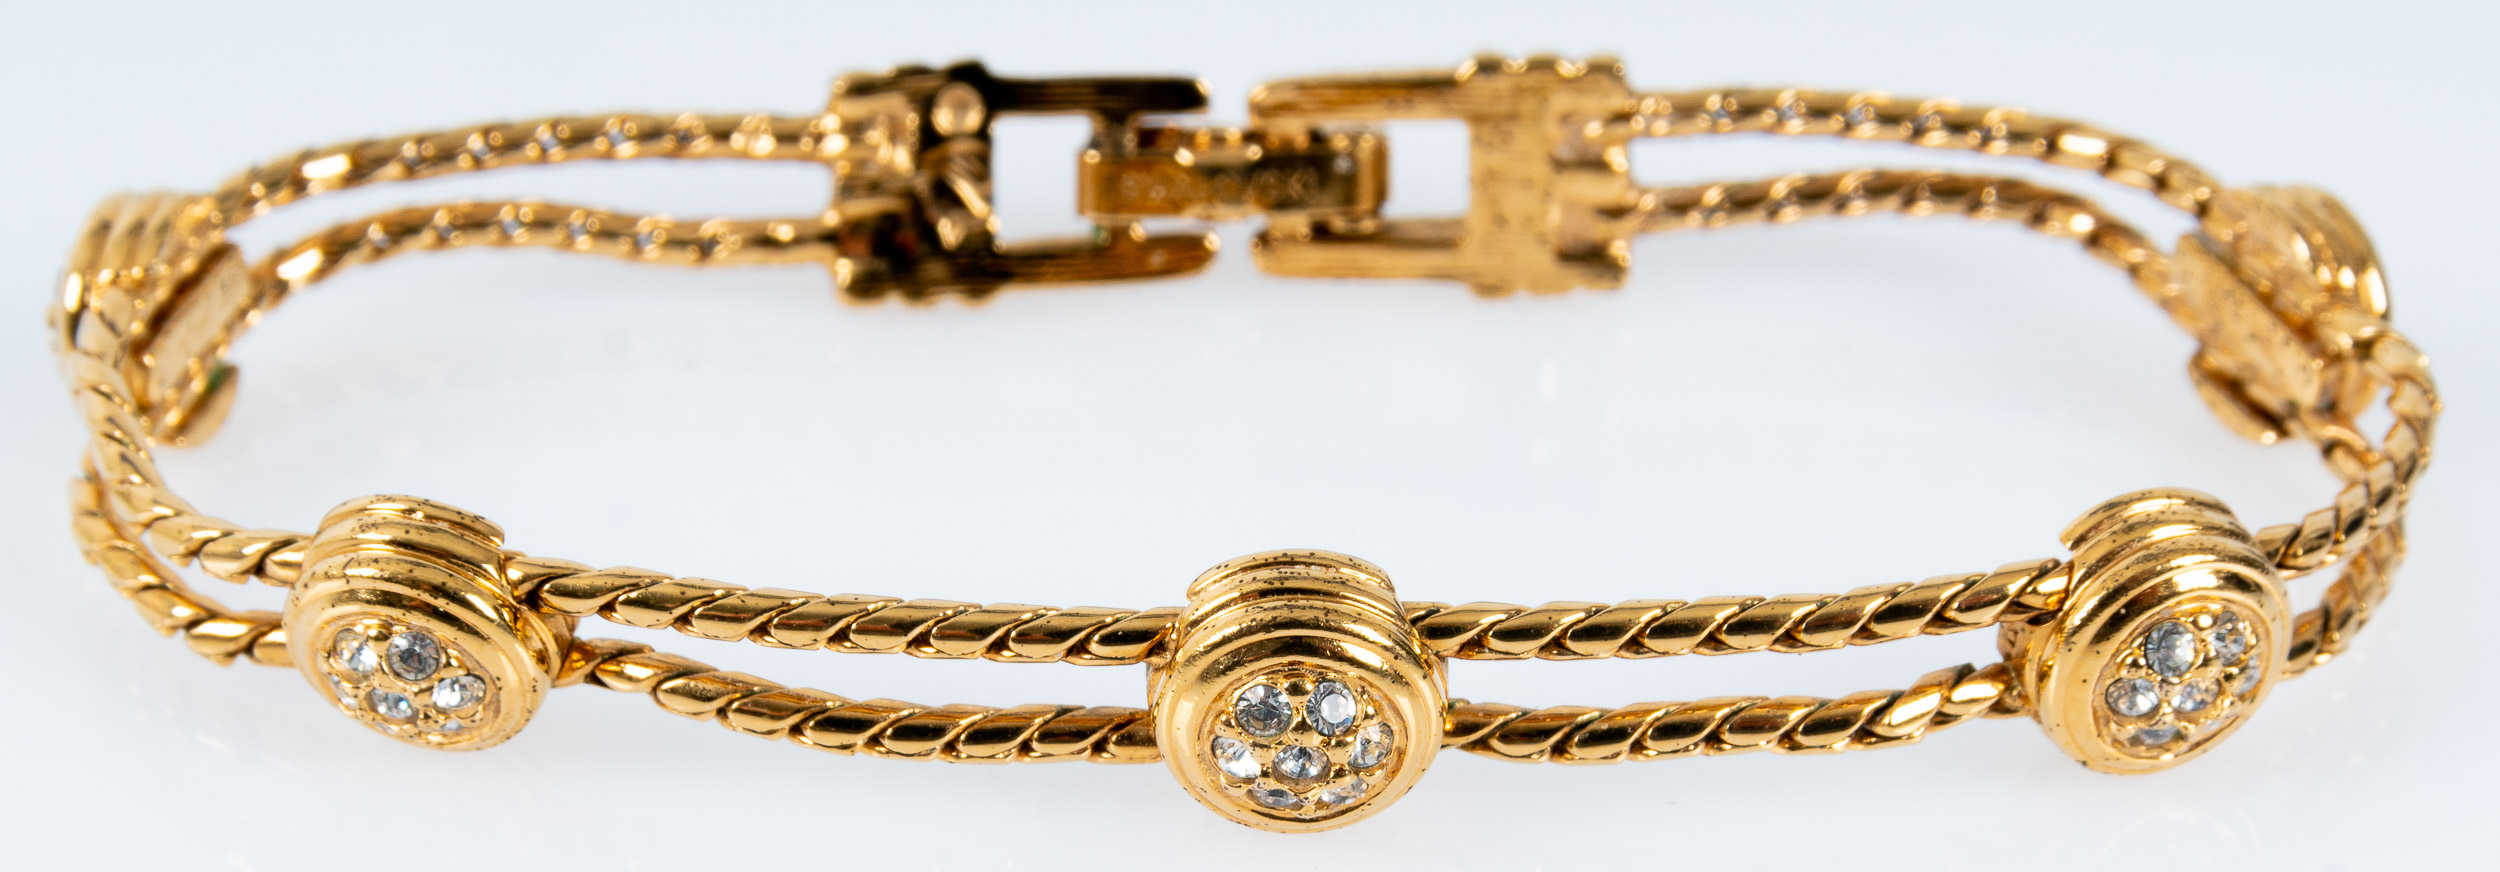 Edles "Swarovski" Armband mit Faltschließe, unedles, vergoldetes Schmuckstück/ Armkette; Länge ca.